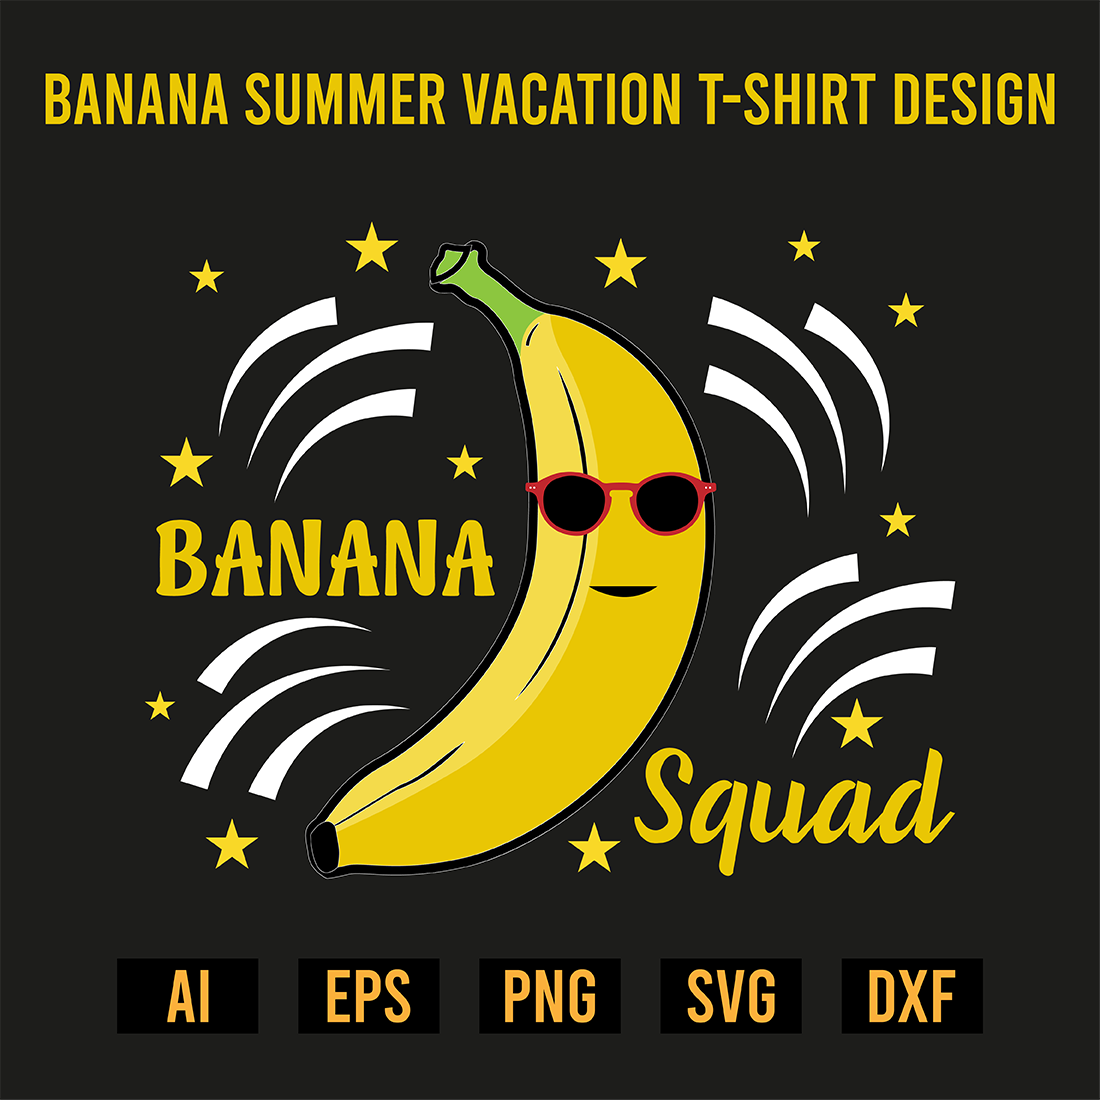 Banana Summer Vacation T-Shirt Design preview image.